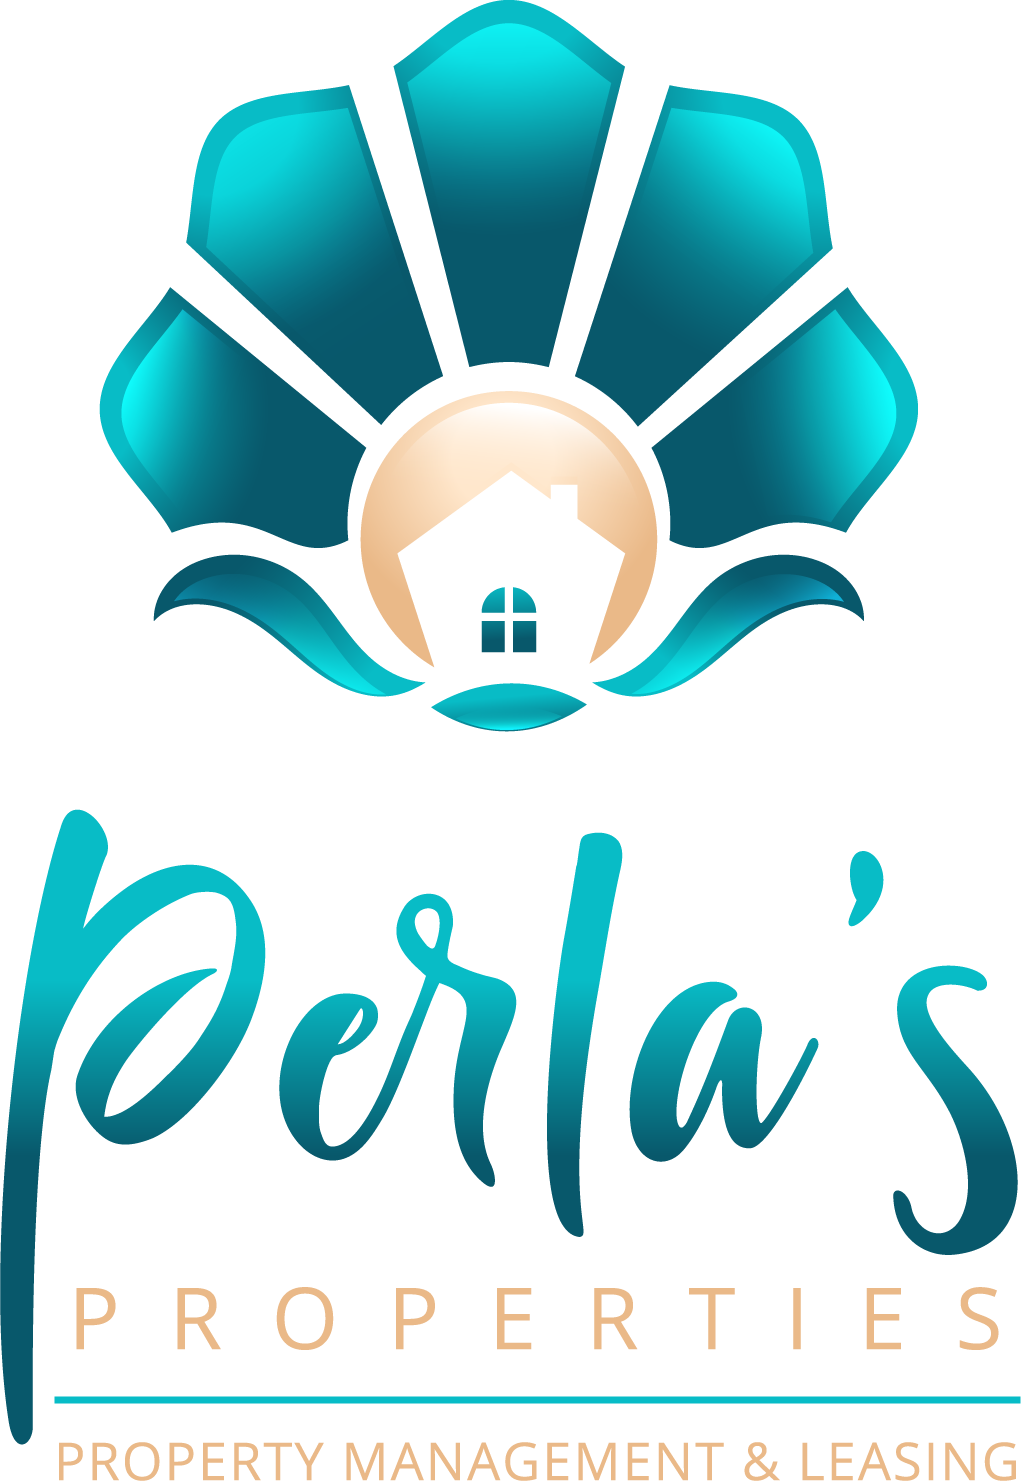 perla's properties logo